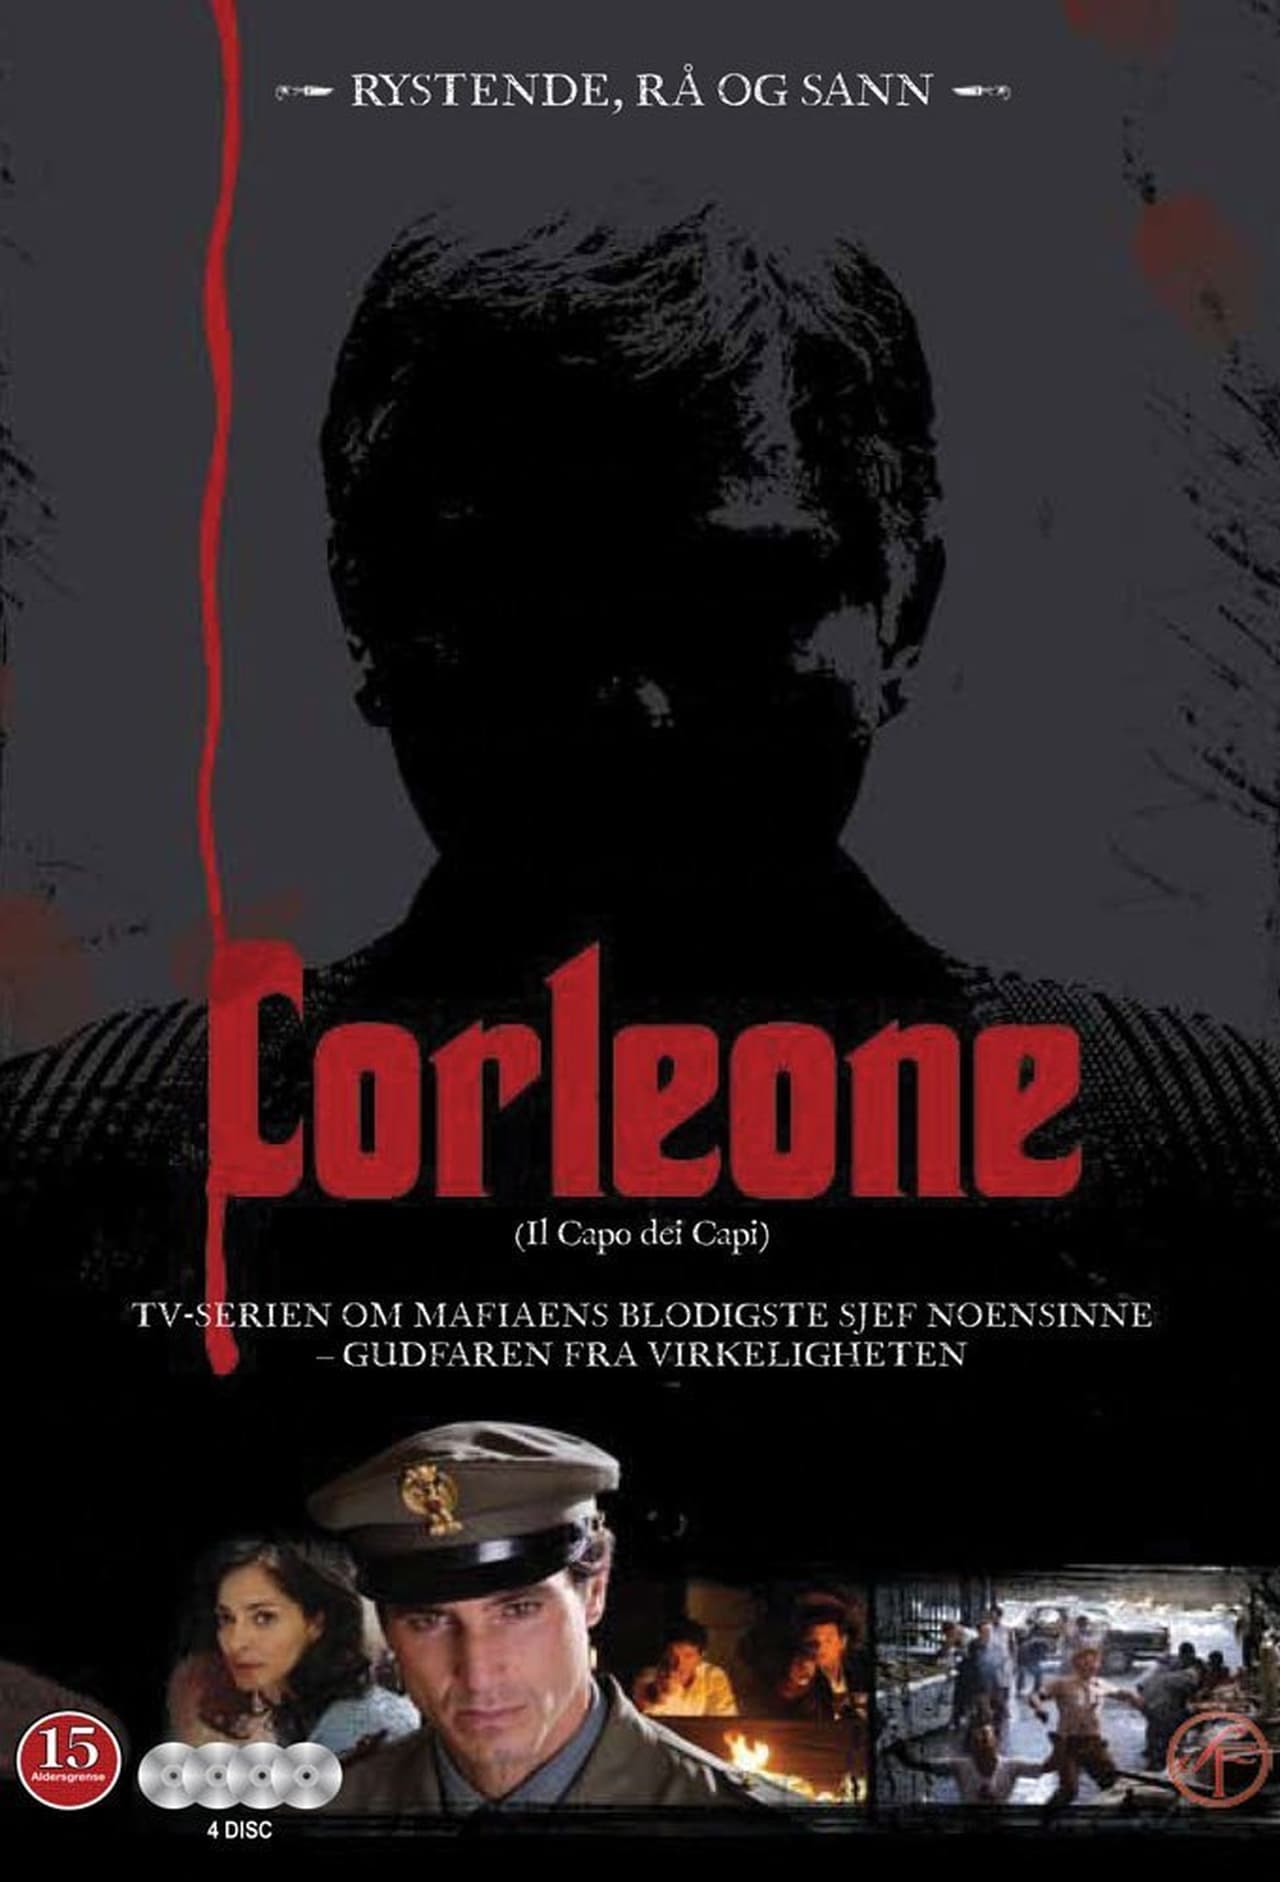 Corleone Season 1